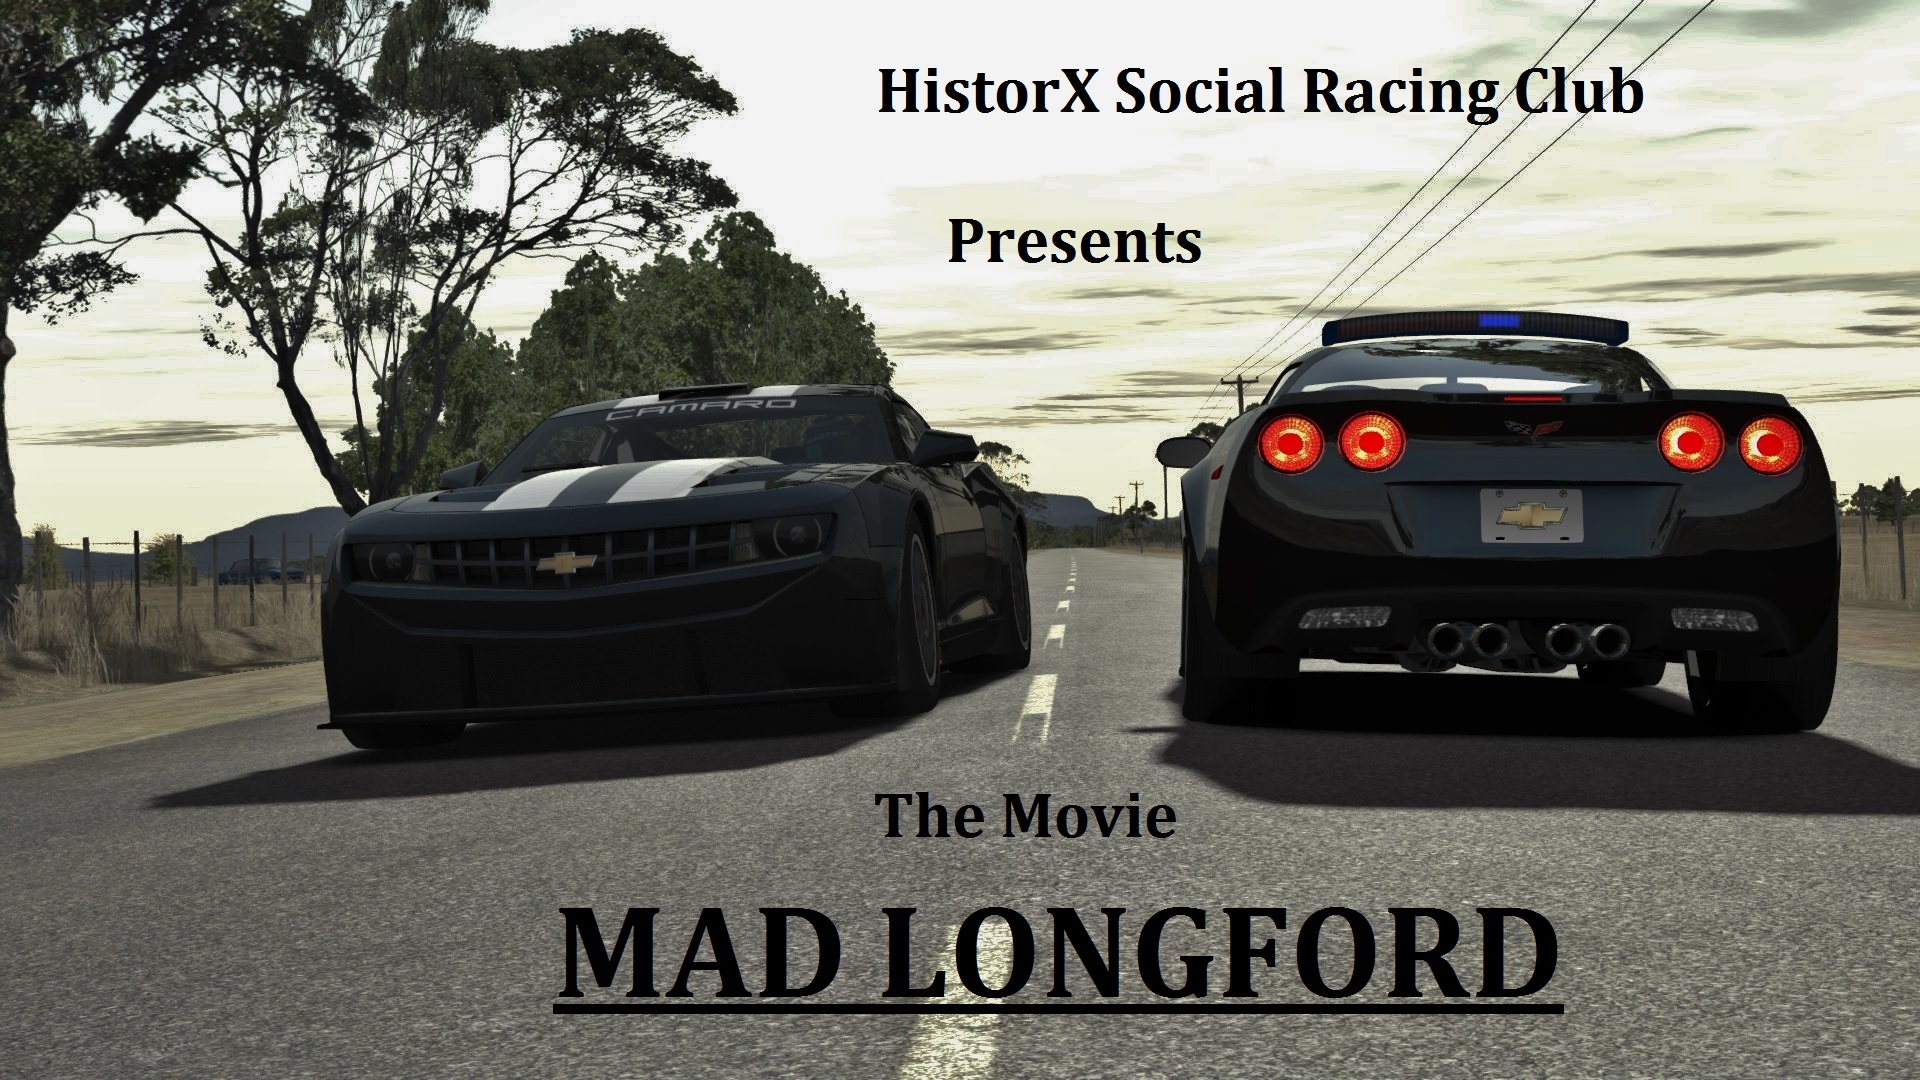 Mad Longford Cover Art.jpg